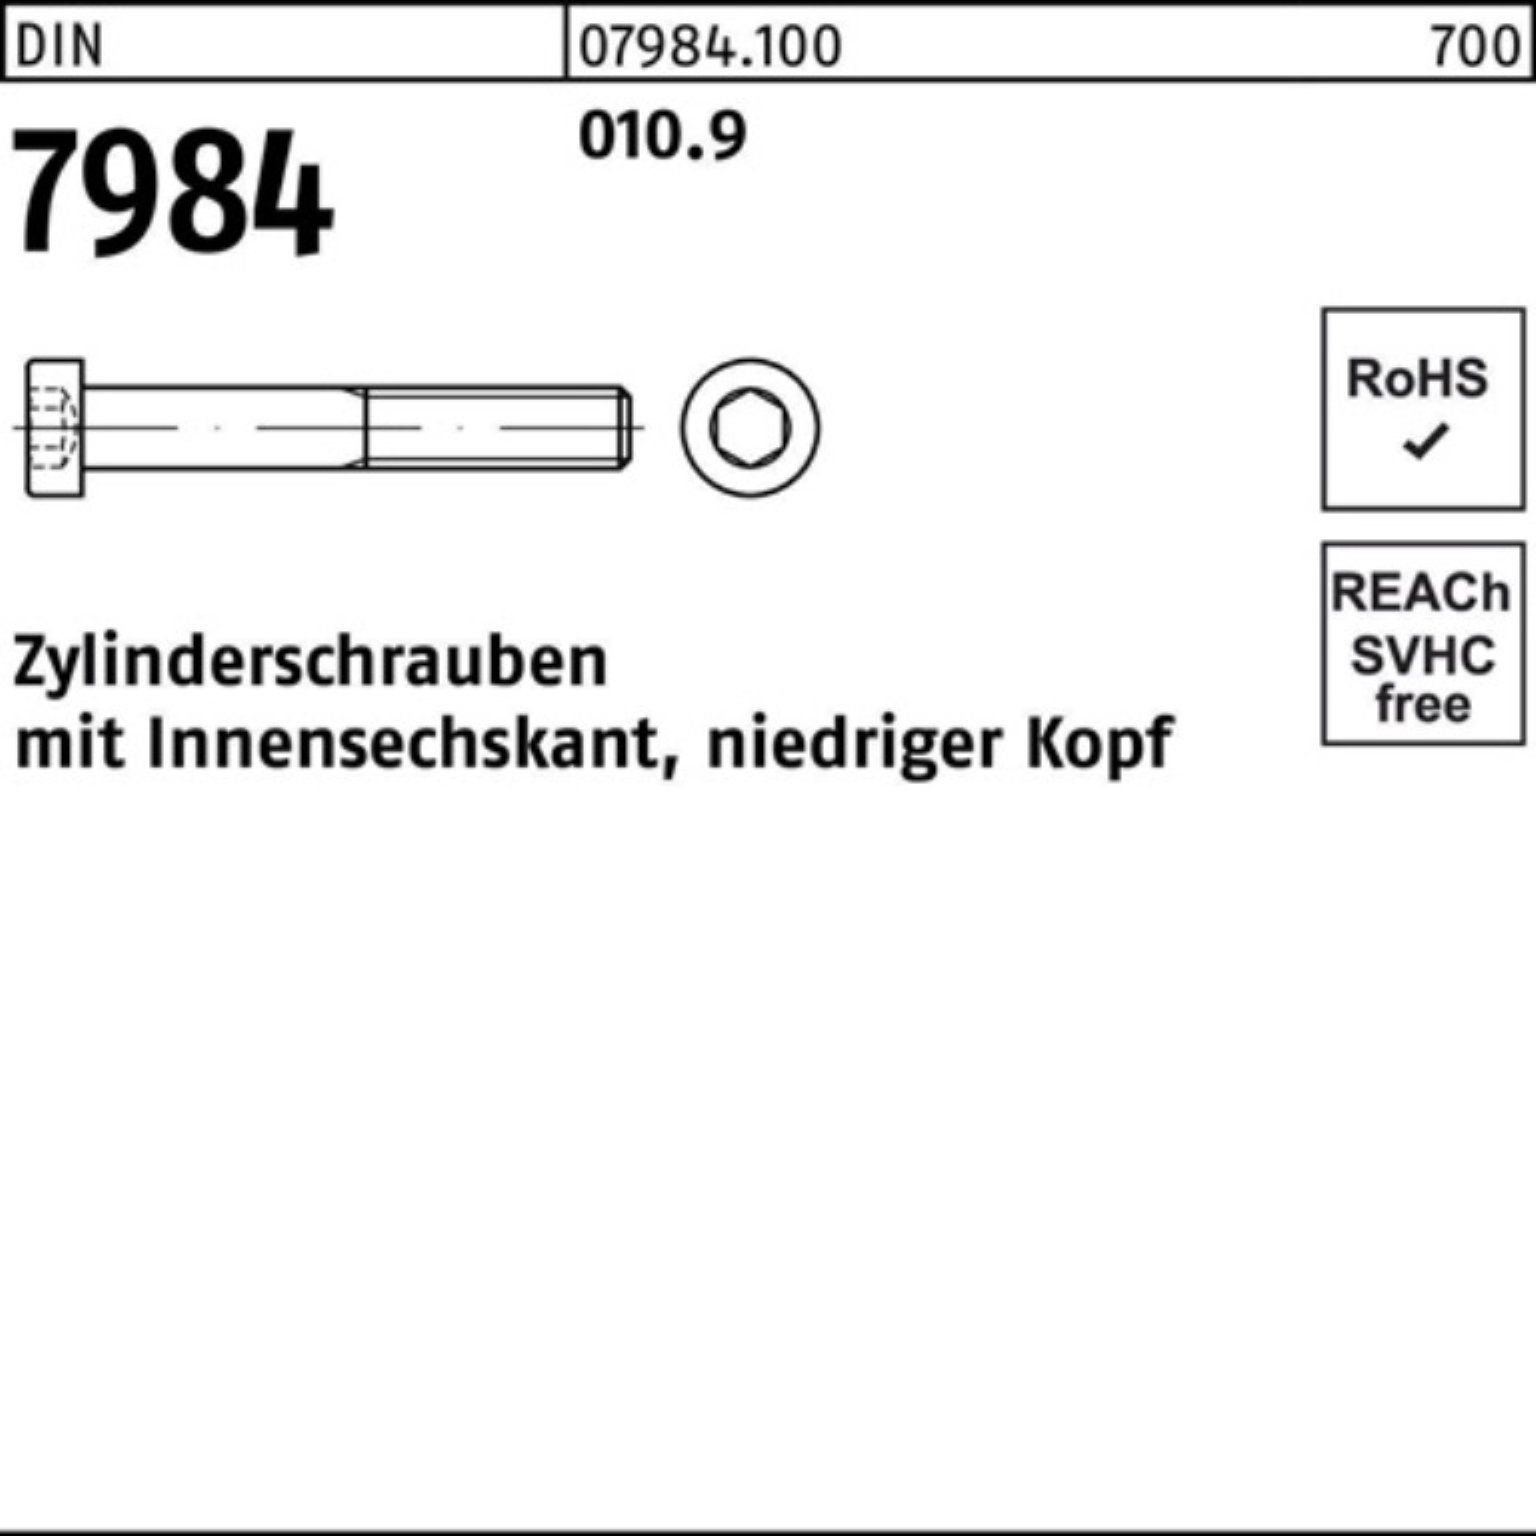 Reyher Zylinderschraube 200er Pack Innen-6kt 010.9 M8x DIN Stück Zylinderschraube 7984 200 25